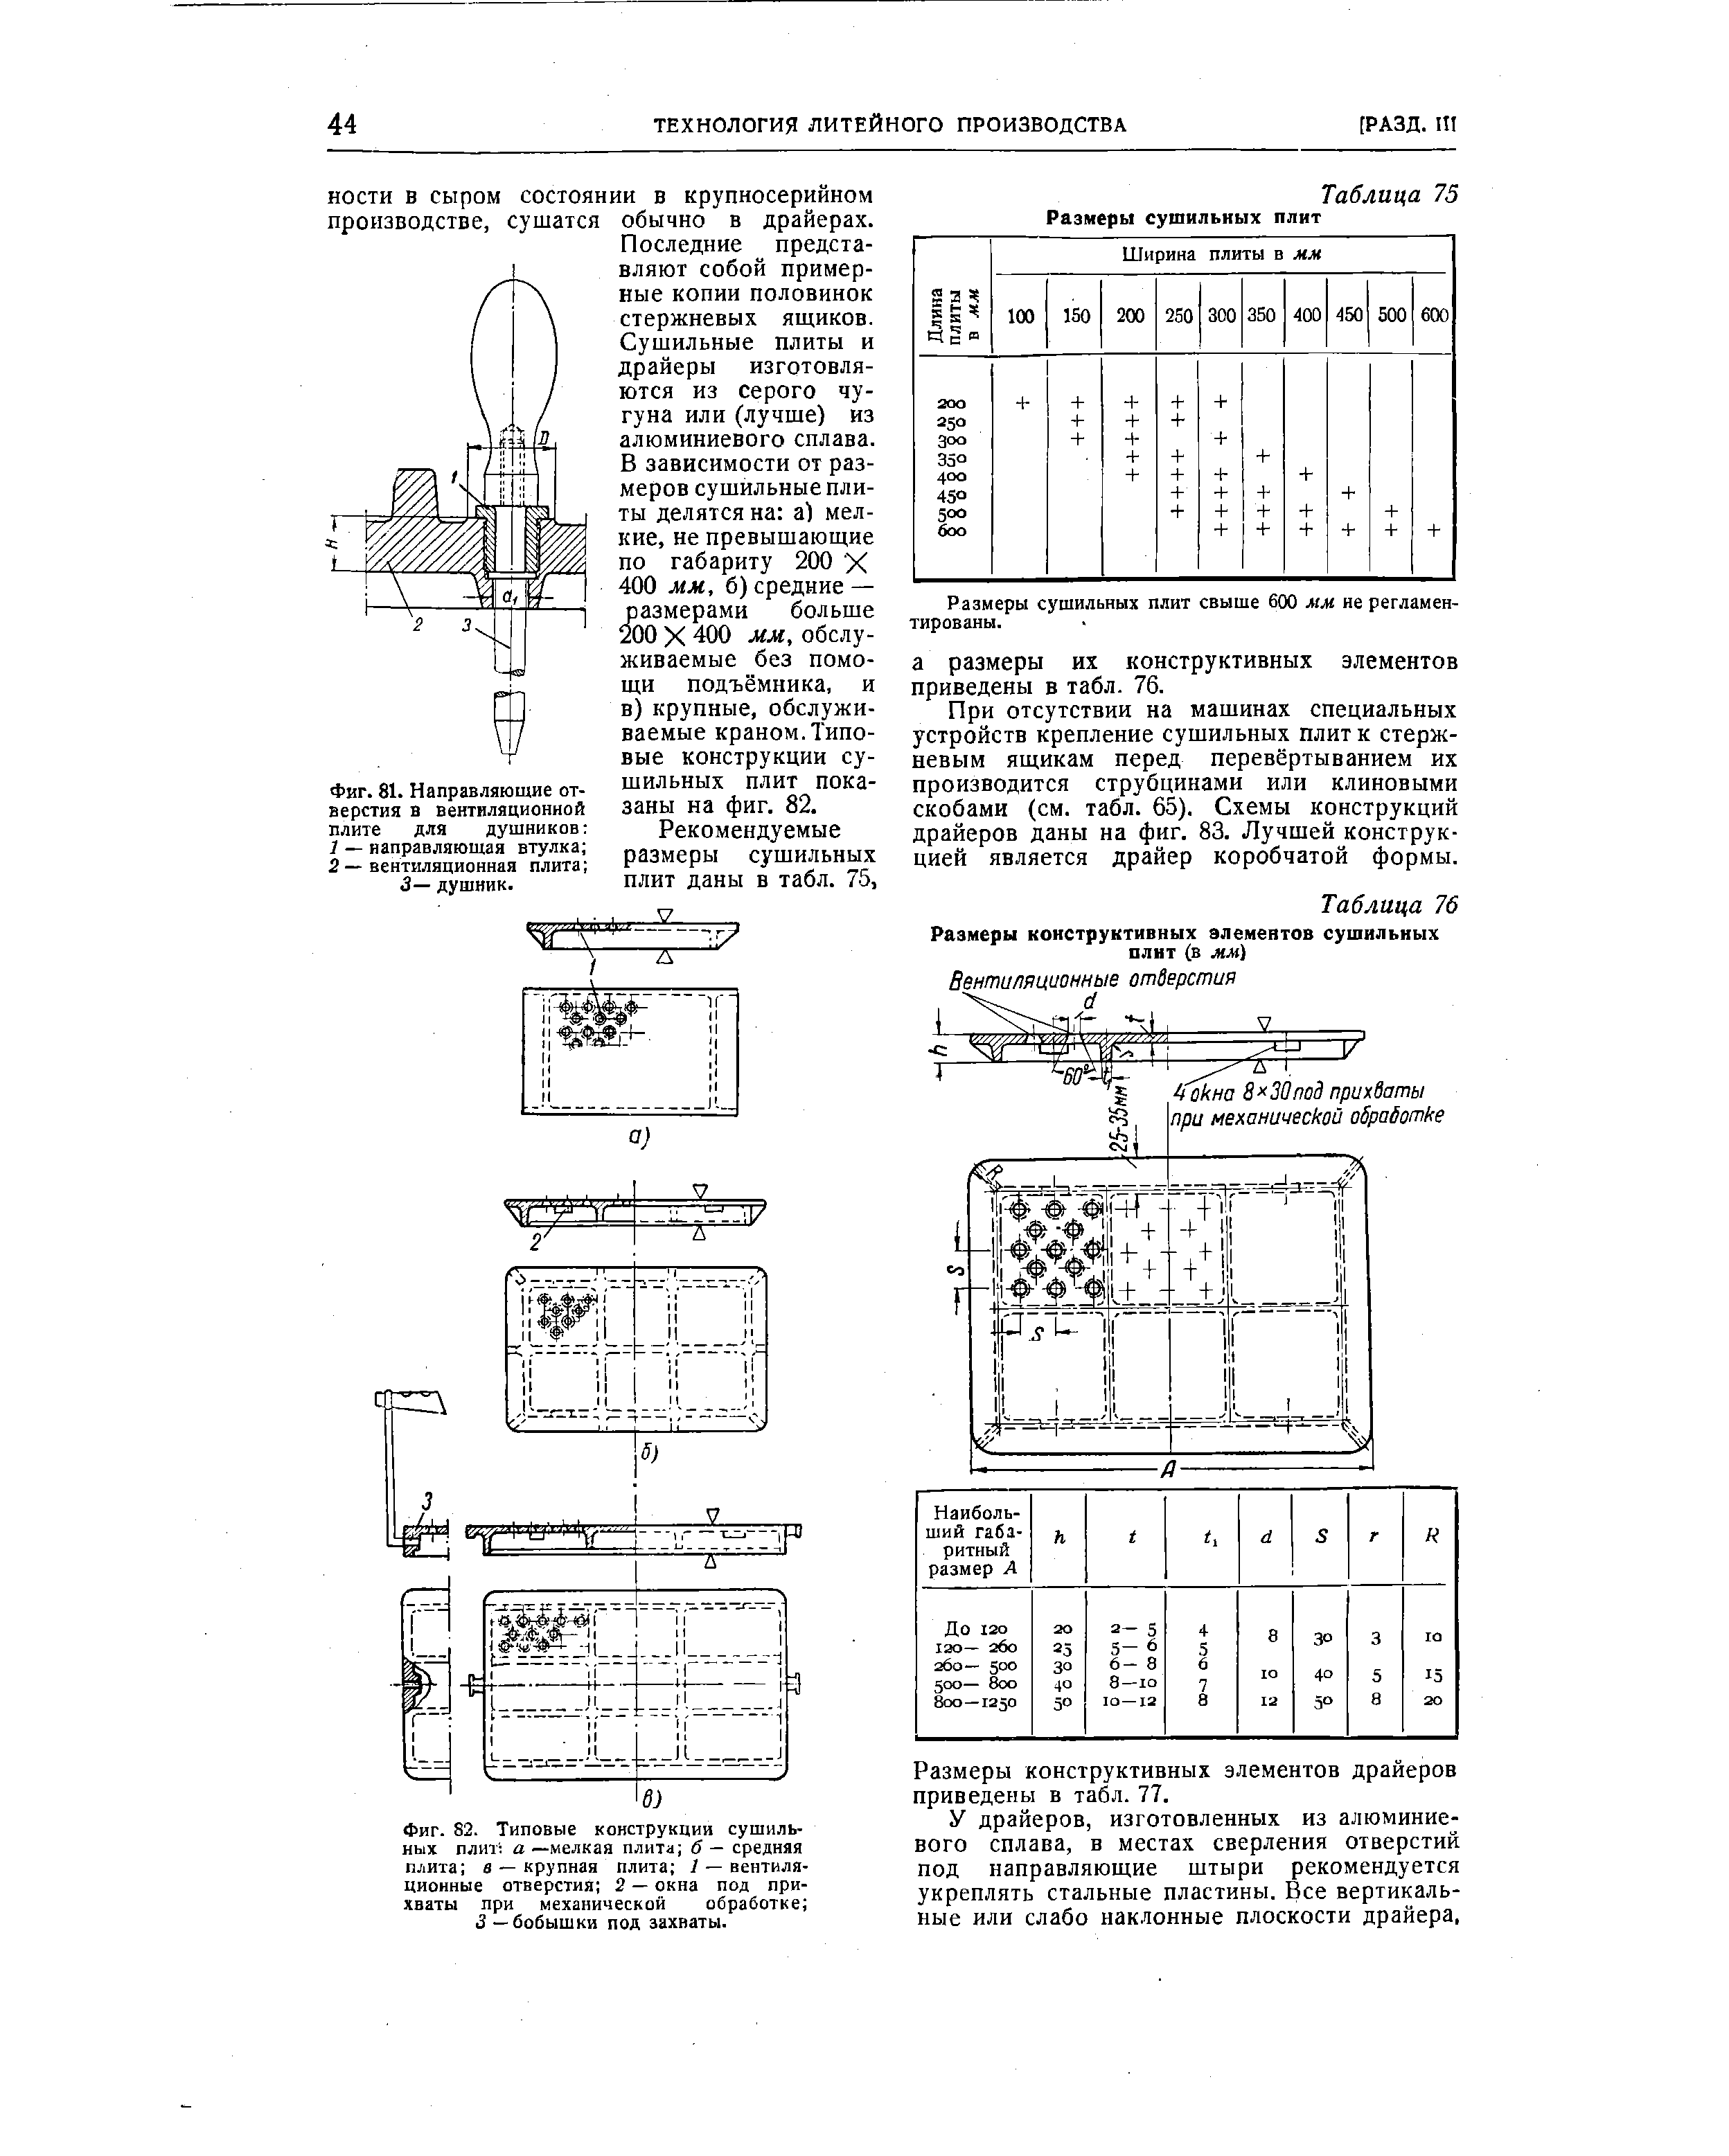 Таблица 76 Размеры конструктивных элементов сушильных плит (в мм)
